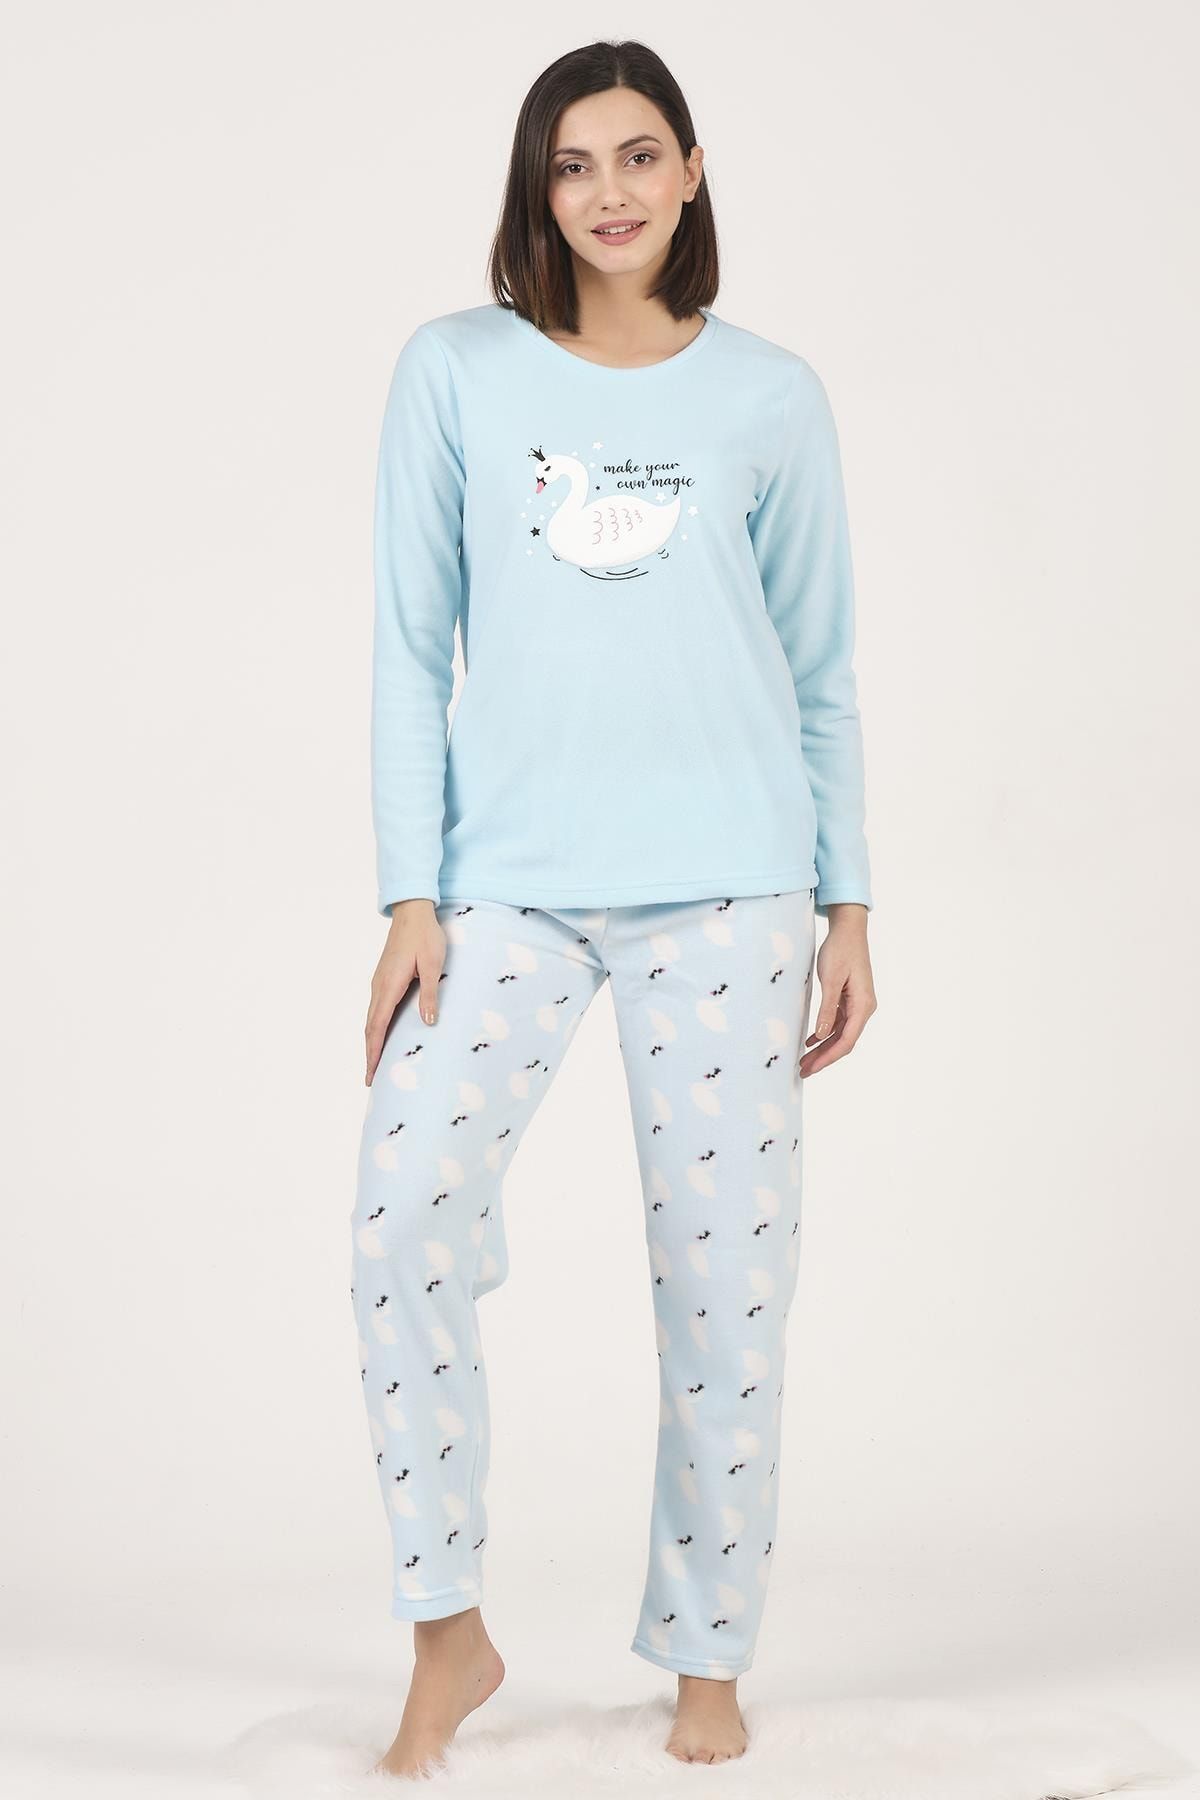 DOFİ Kadın Polar Pijama Takımı